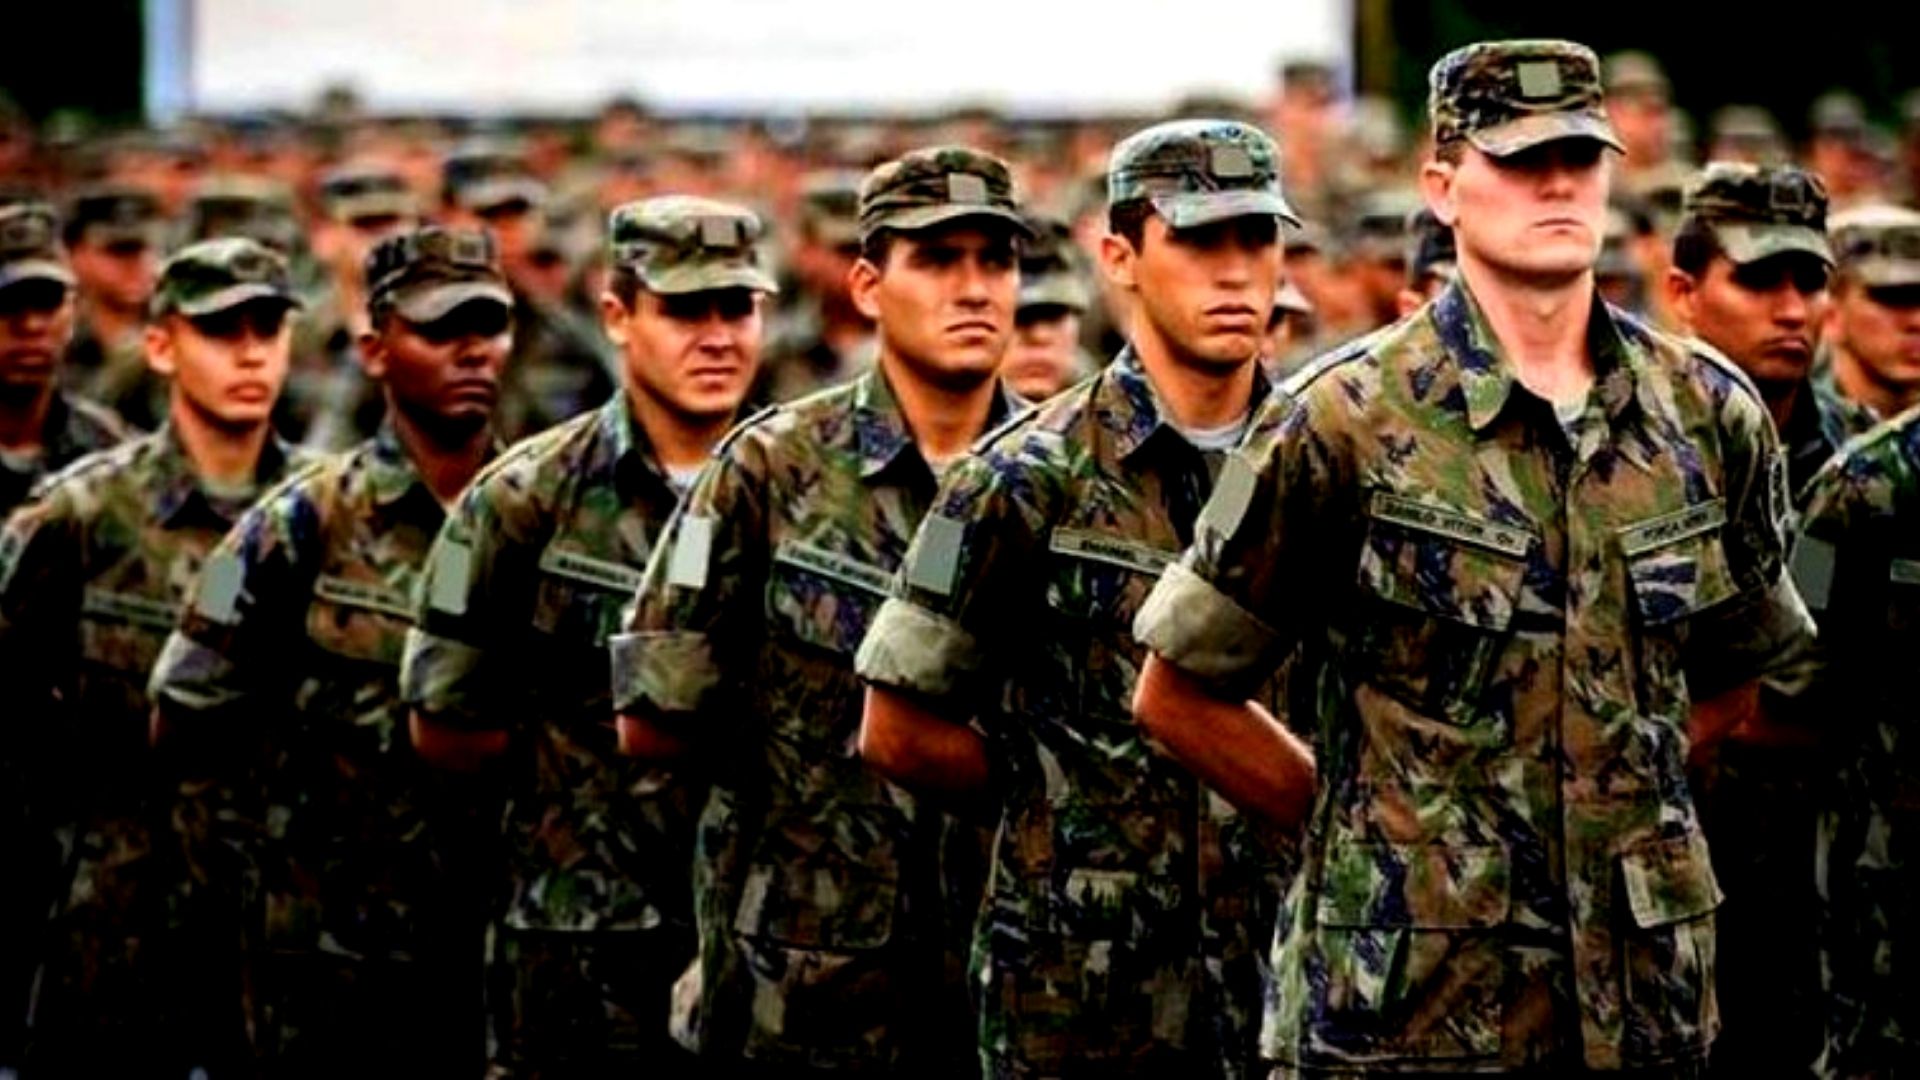 Exército Brasileiro - O que acontece após o alistamento militar